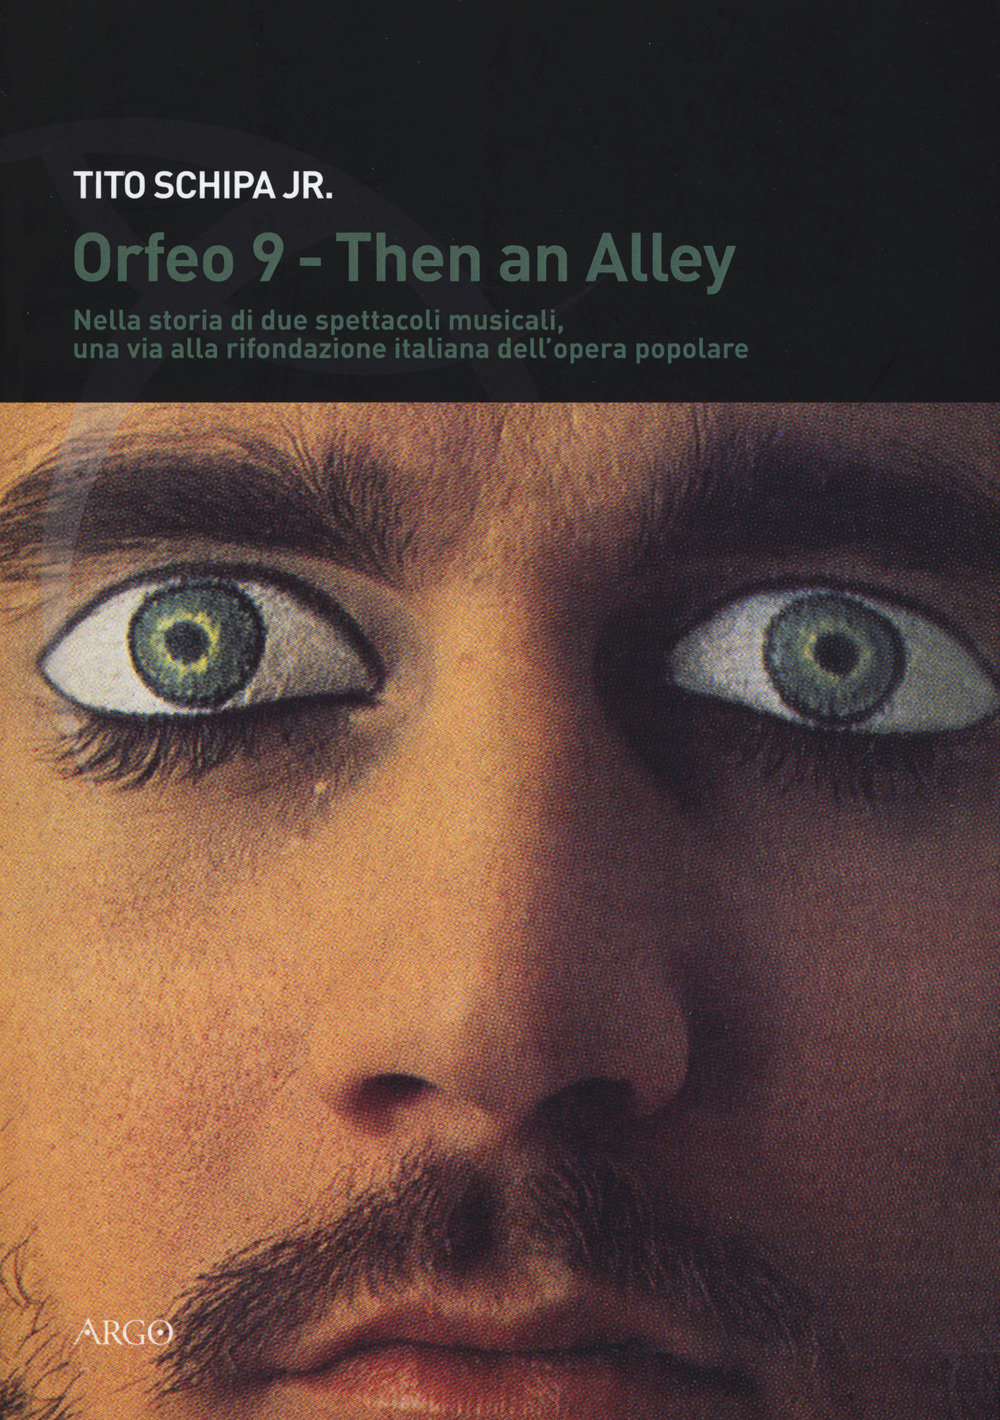 Then an alley, Orfeo 9. Storia di due spettacoli. Nella storia di due spettacoli musicali, una via alla rifondazione italiana dell'opera popolare